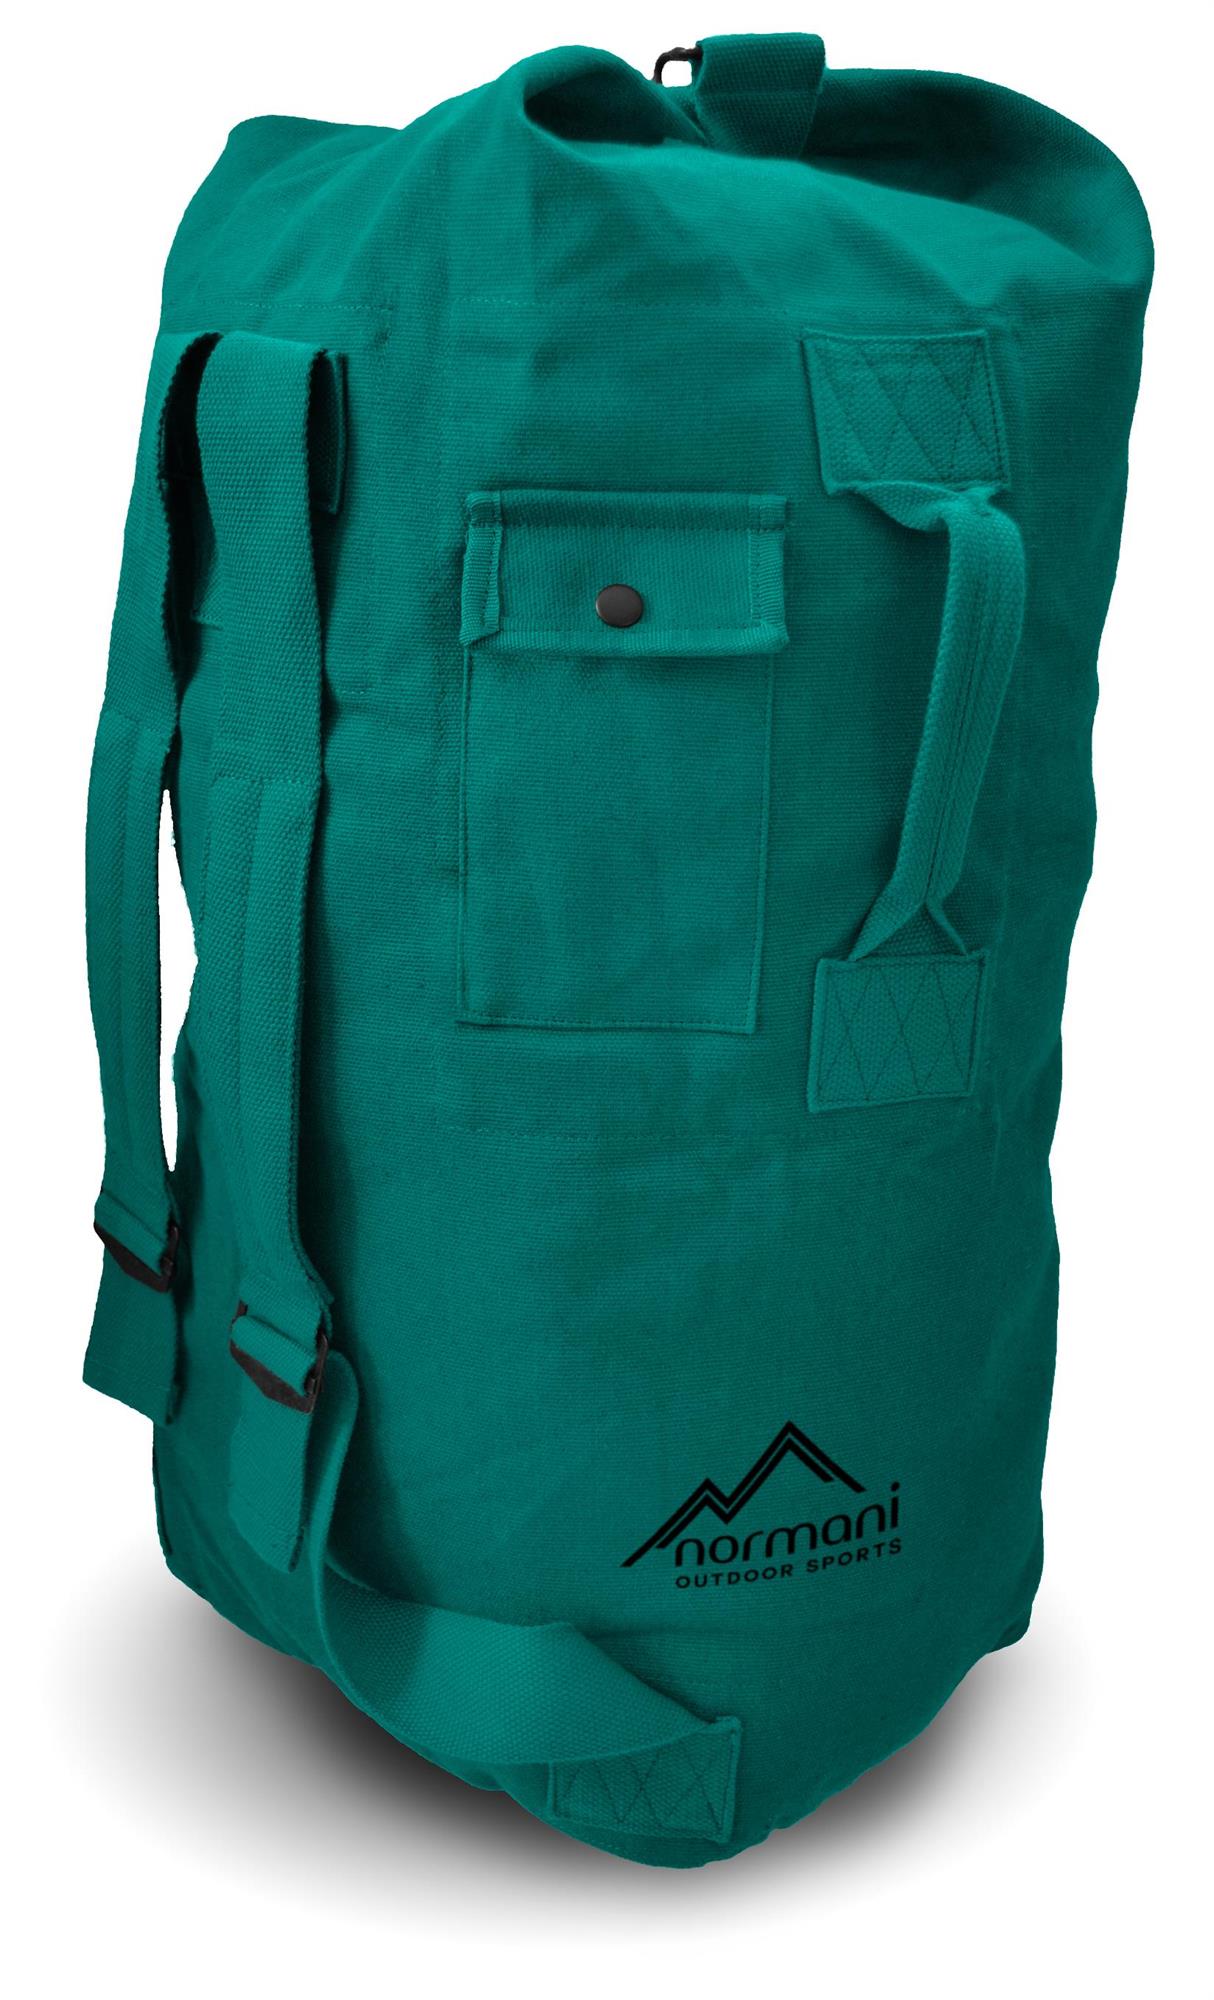 Seesack Canvas Reise-Rucksack mit Außentasche Duffle Bag Universal Tasche 